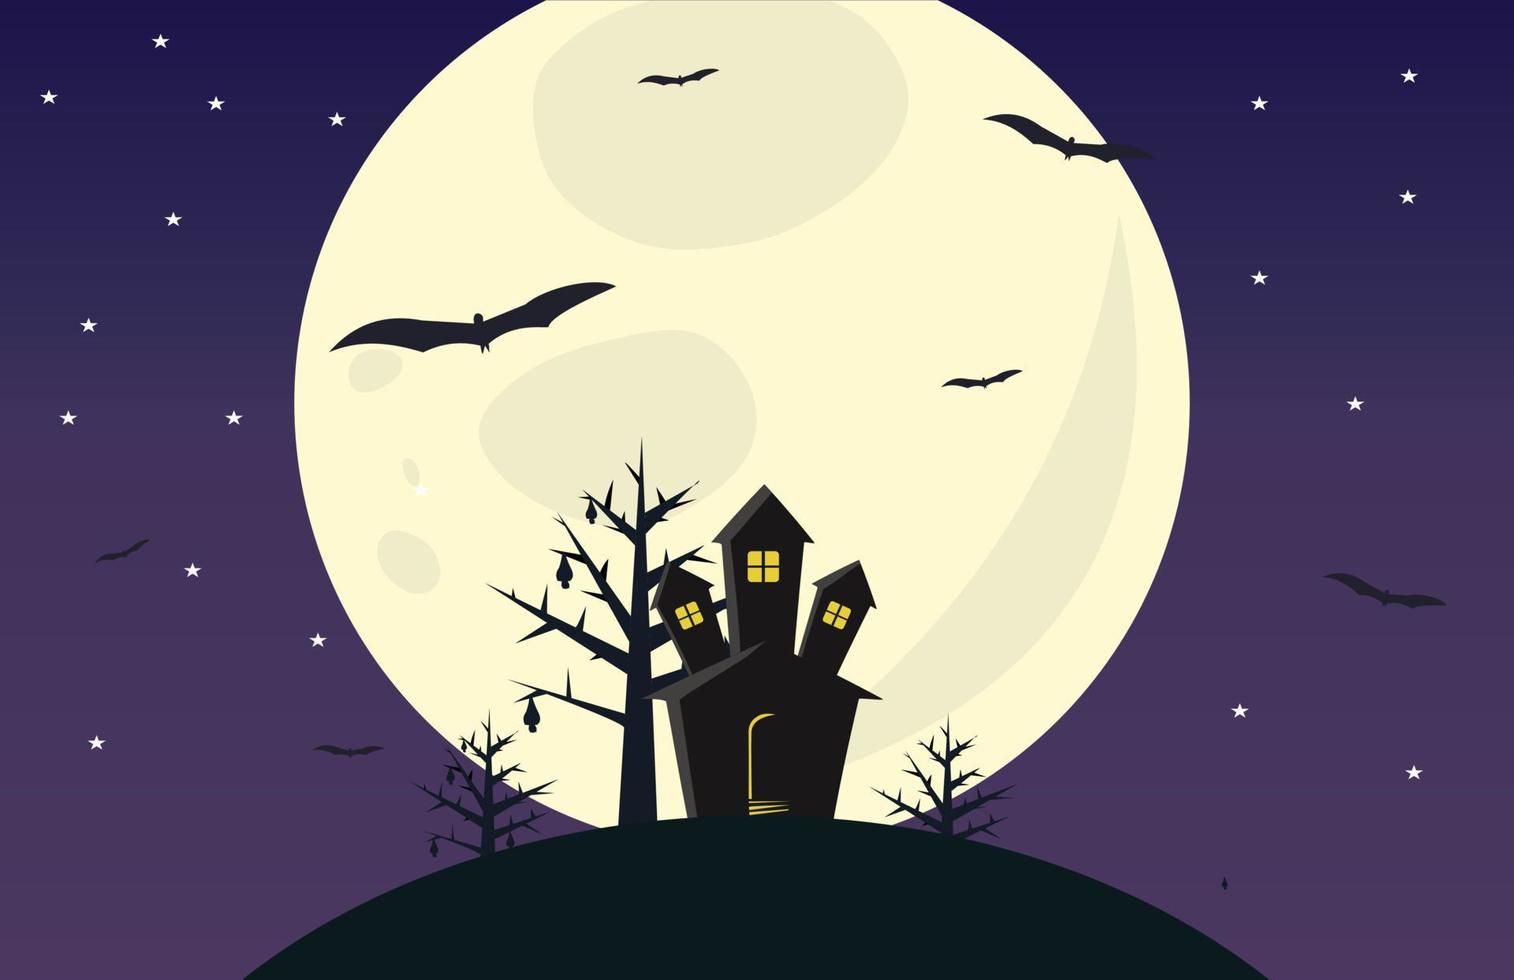 vista vectorial del cielo nocturno de luna llena, estrellas, murciélagos, casa antigua y árboles. misteriosa ilustración de amigos de la casa. mejor para fondos y fondos de pantalla vector